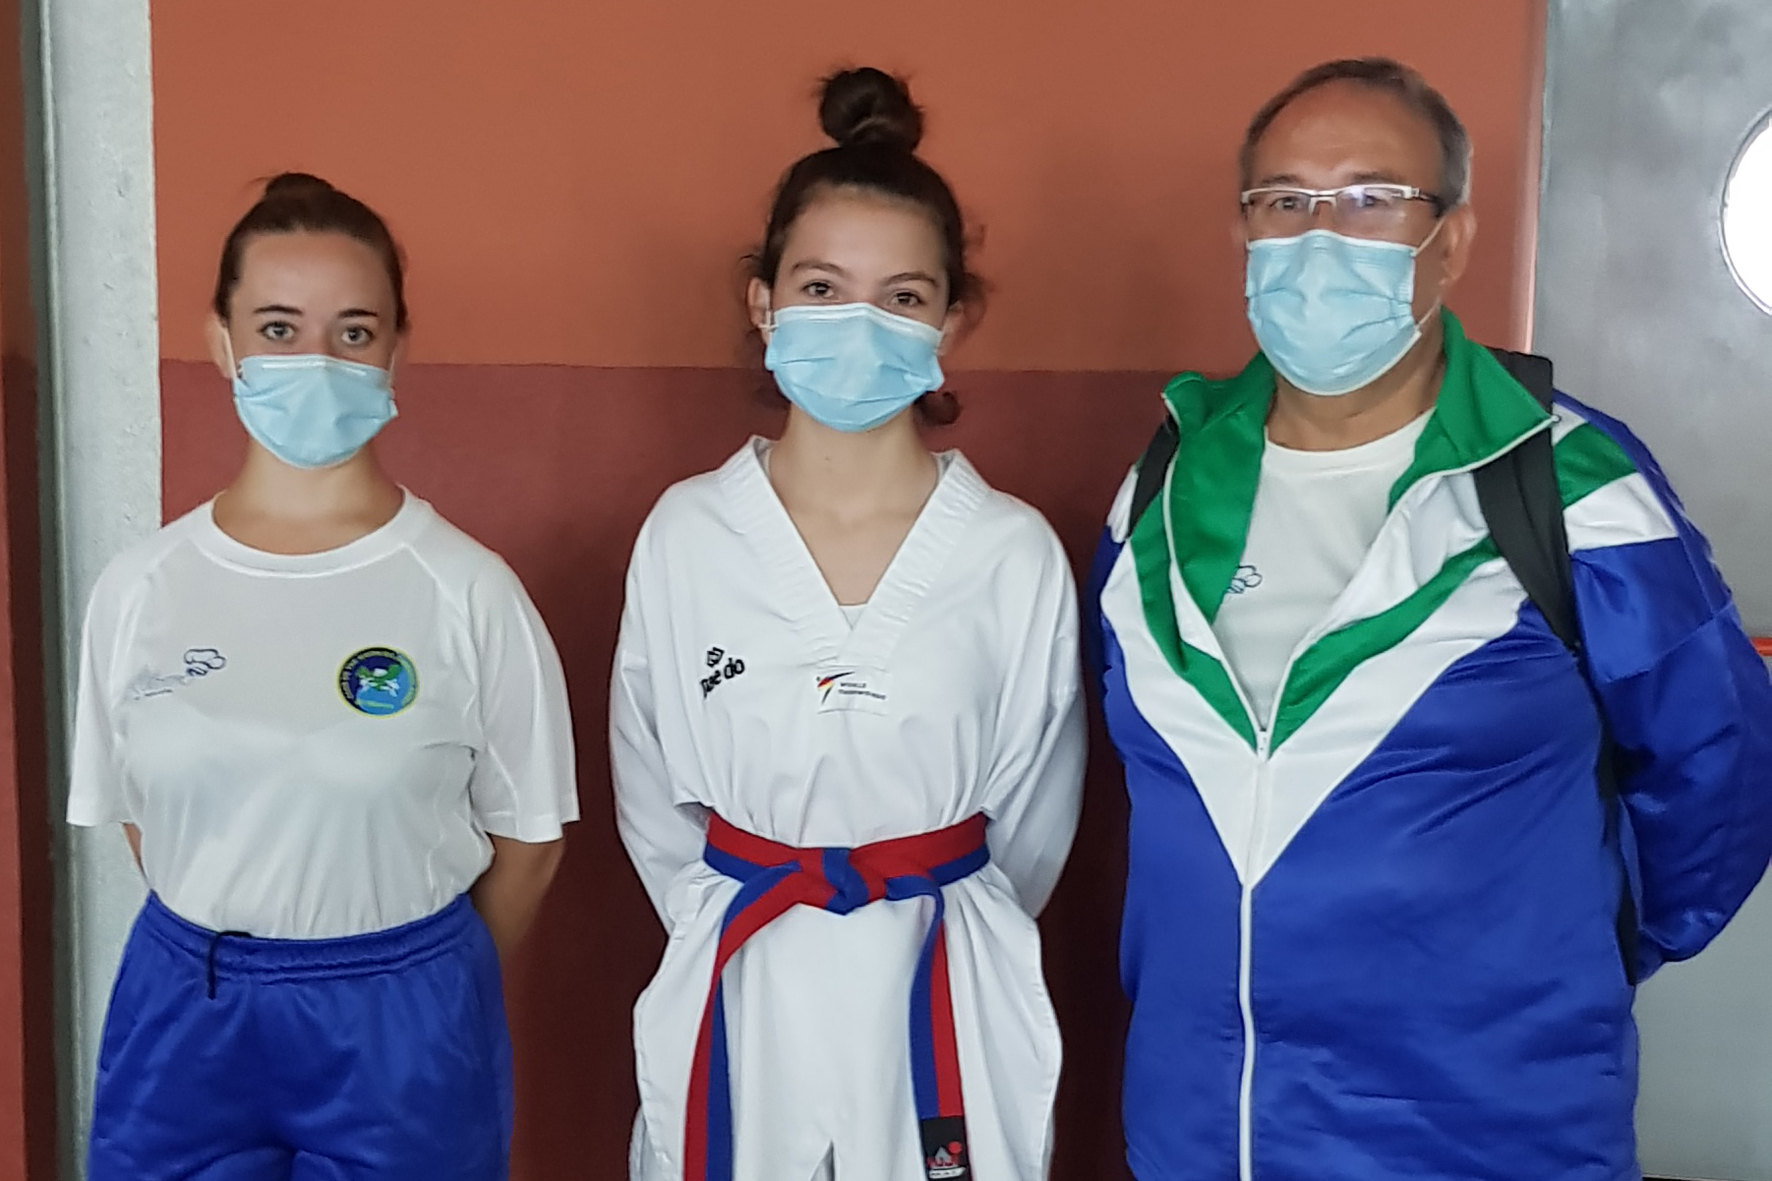 El Club de Taekwondo herreño Gimnasio Abreu participa en el Open Internacional Islas Canarias “jóvenes promesas”